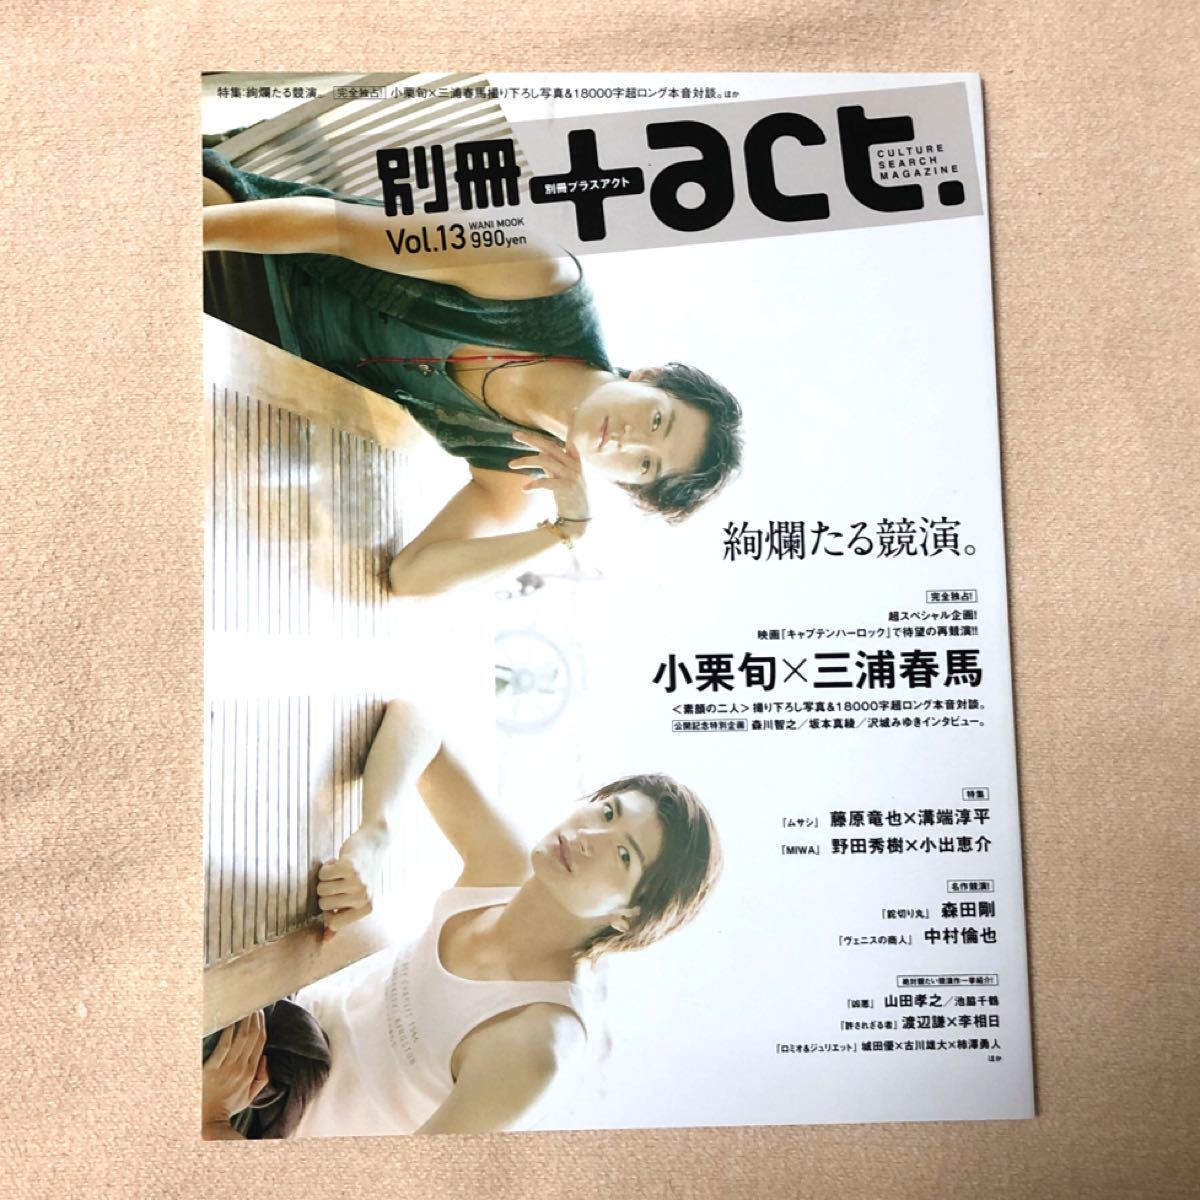 三浦春馬 別冊 act Vol.13 プラスアクト